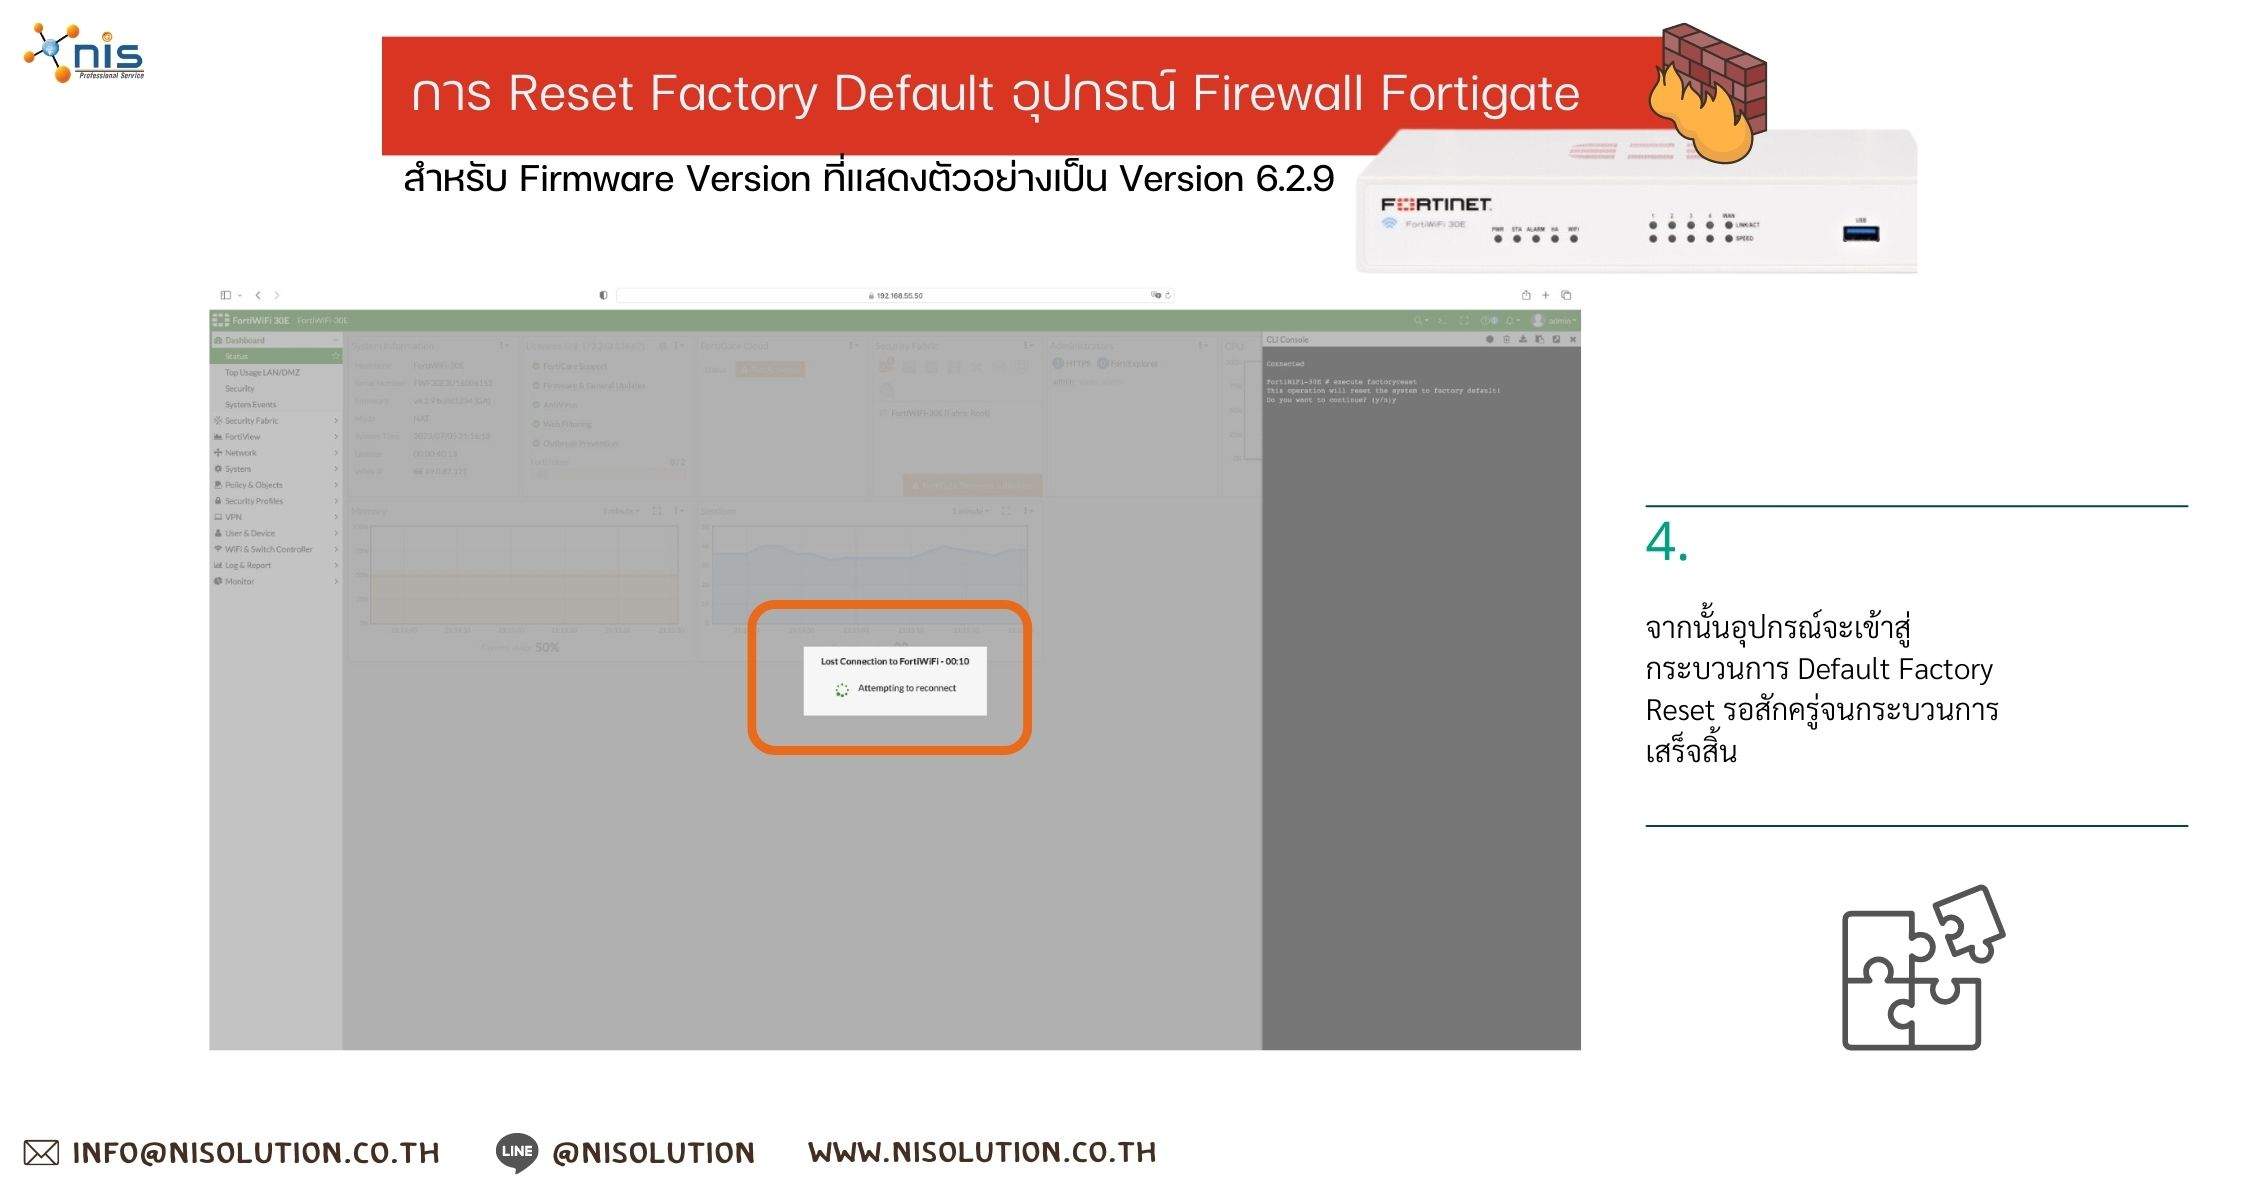 Reset Factory Default Firewall Fortigate